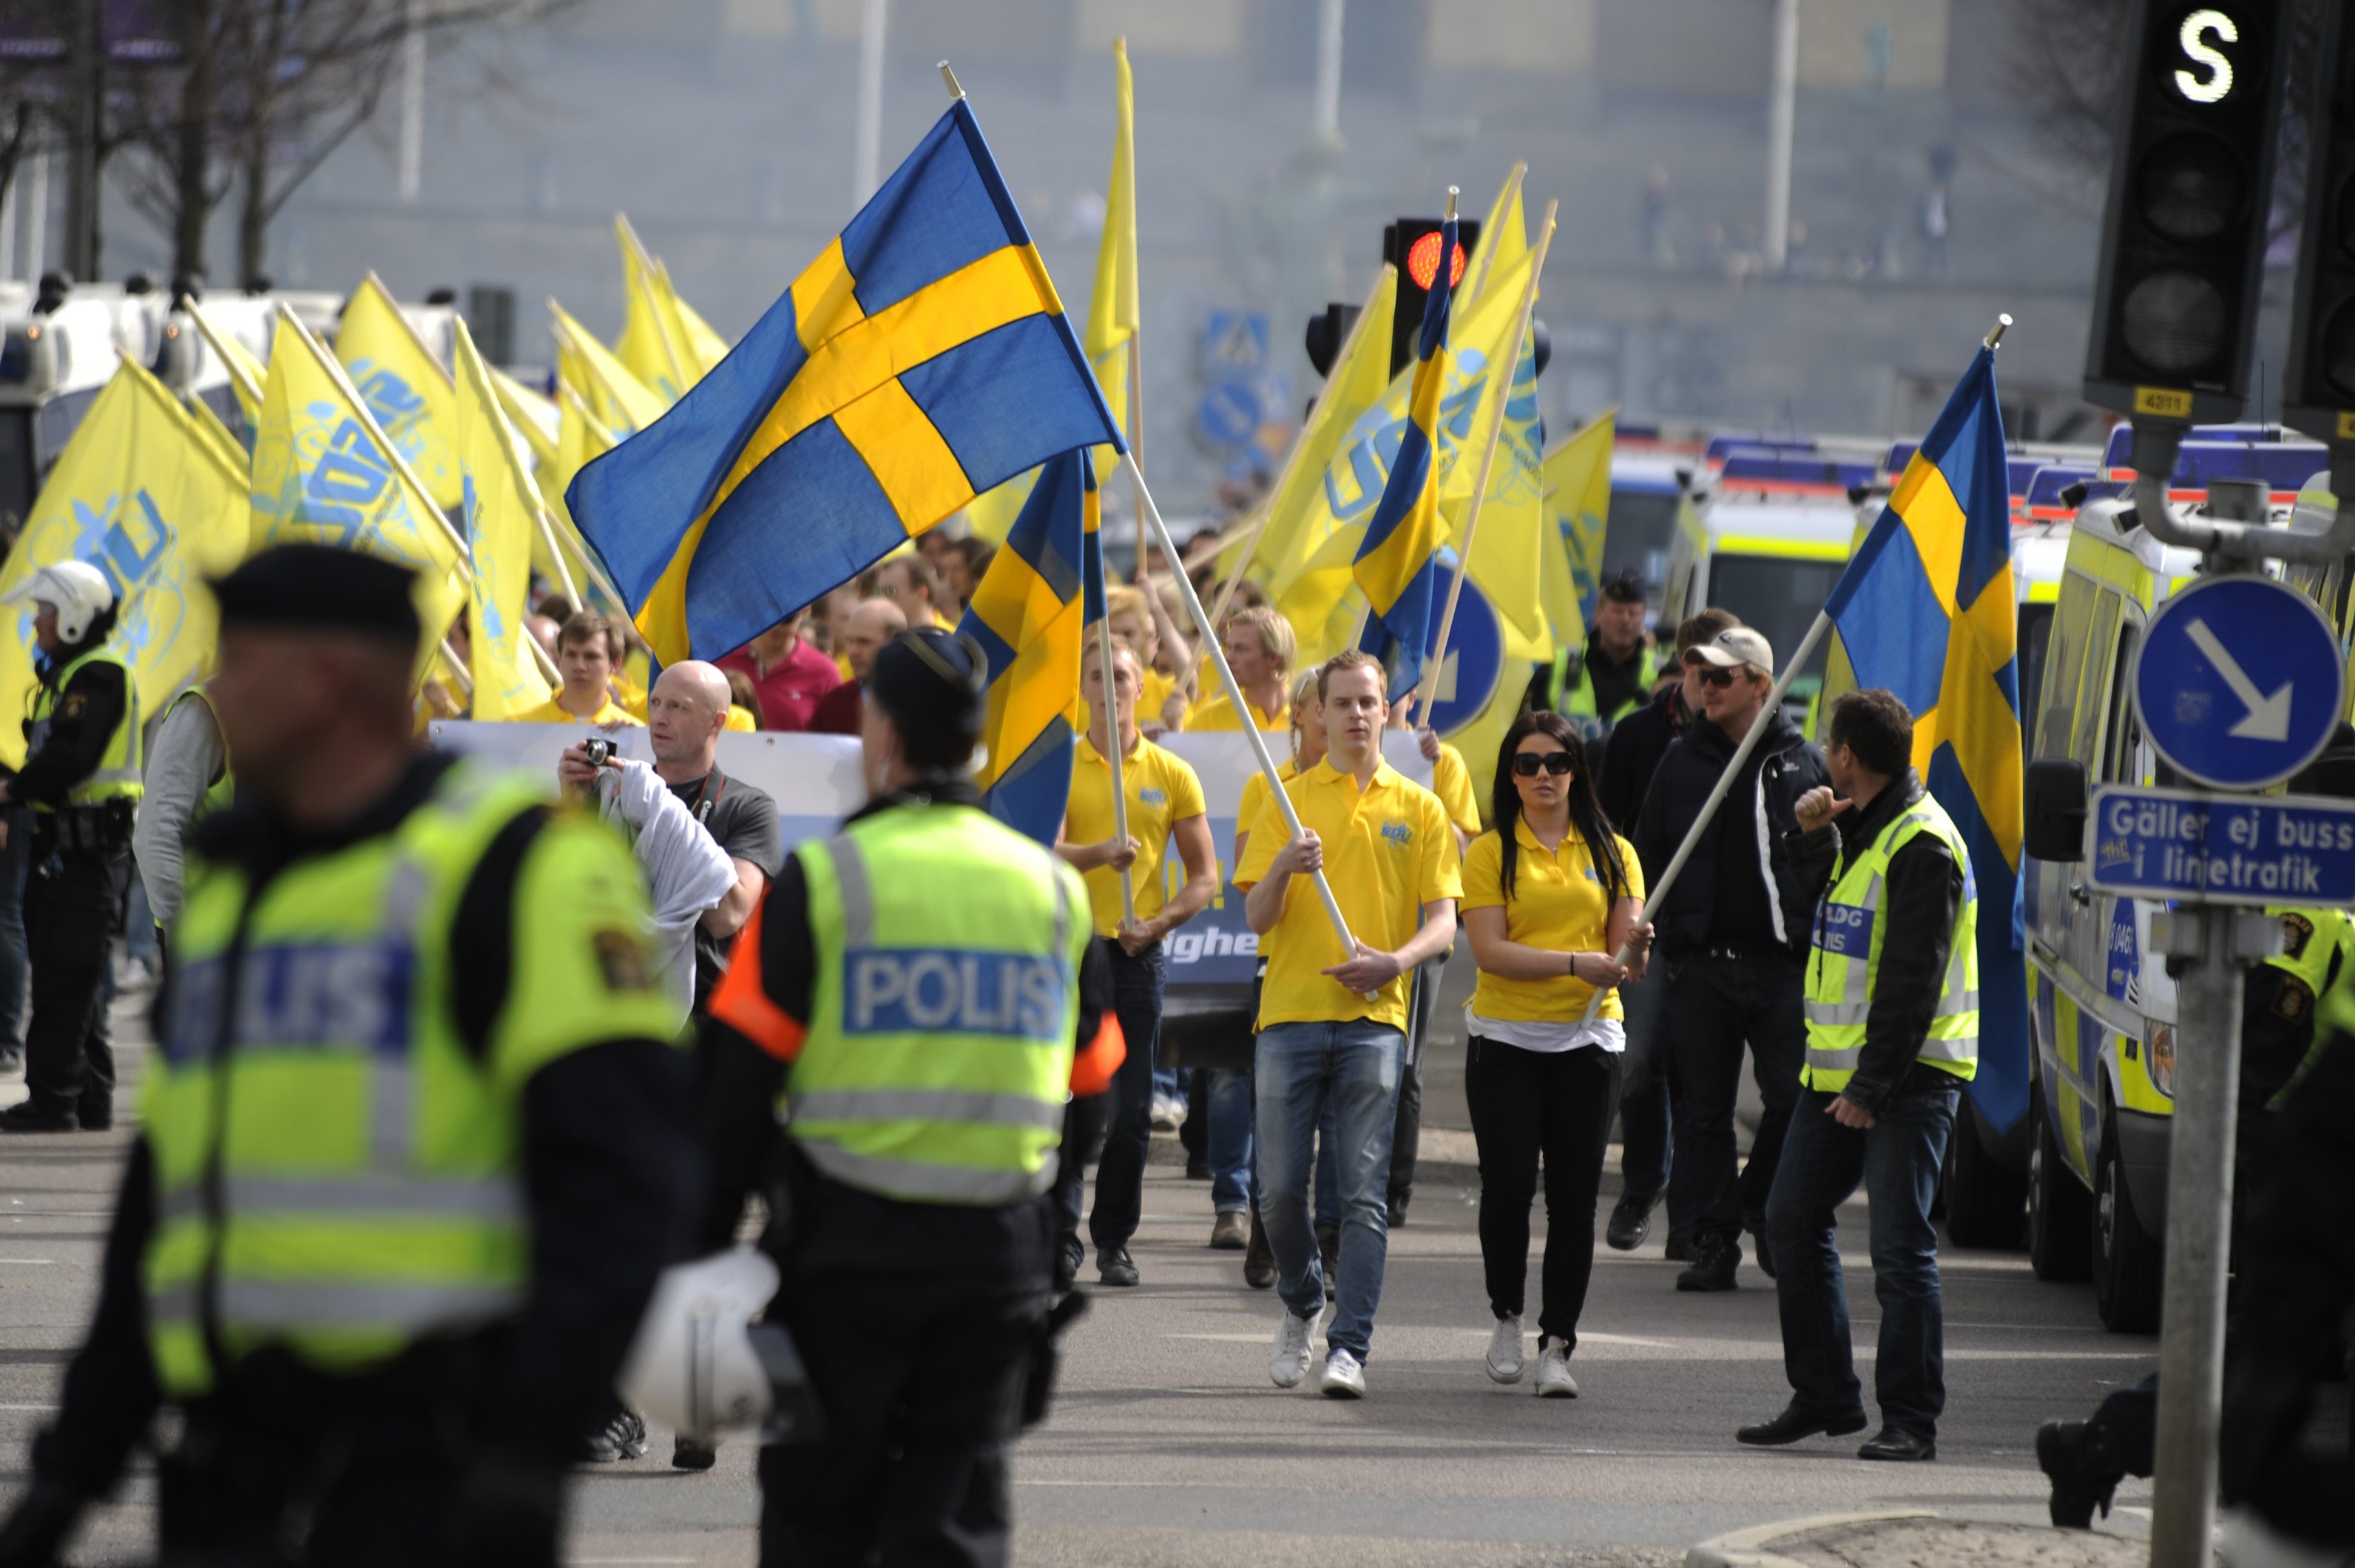 Vahlgren utesluts nu från SDU. Han avsäger sig alla uppdrag, inklusive den planerade demonstrationen i Malmö i oktober. Bilden är från en tidigare demonstration.